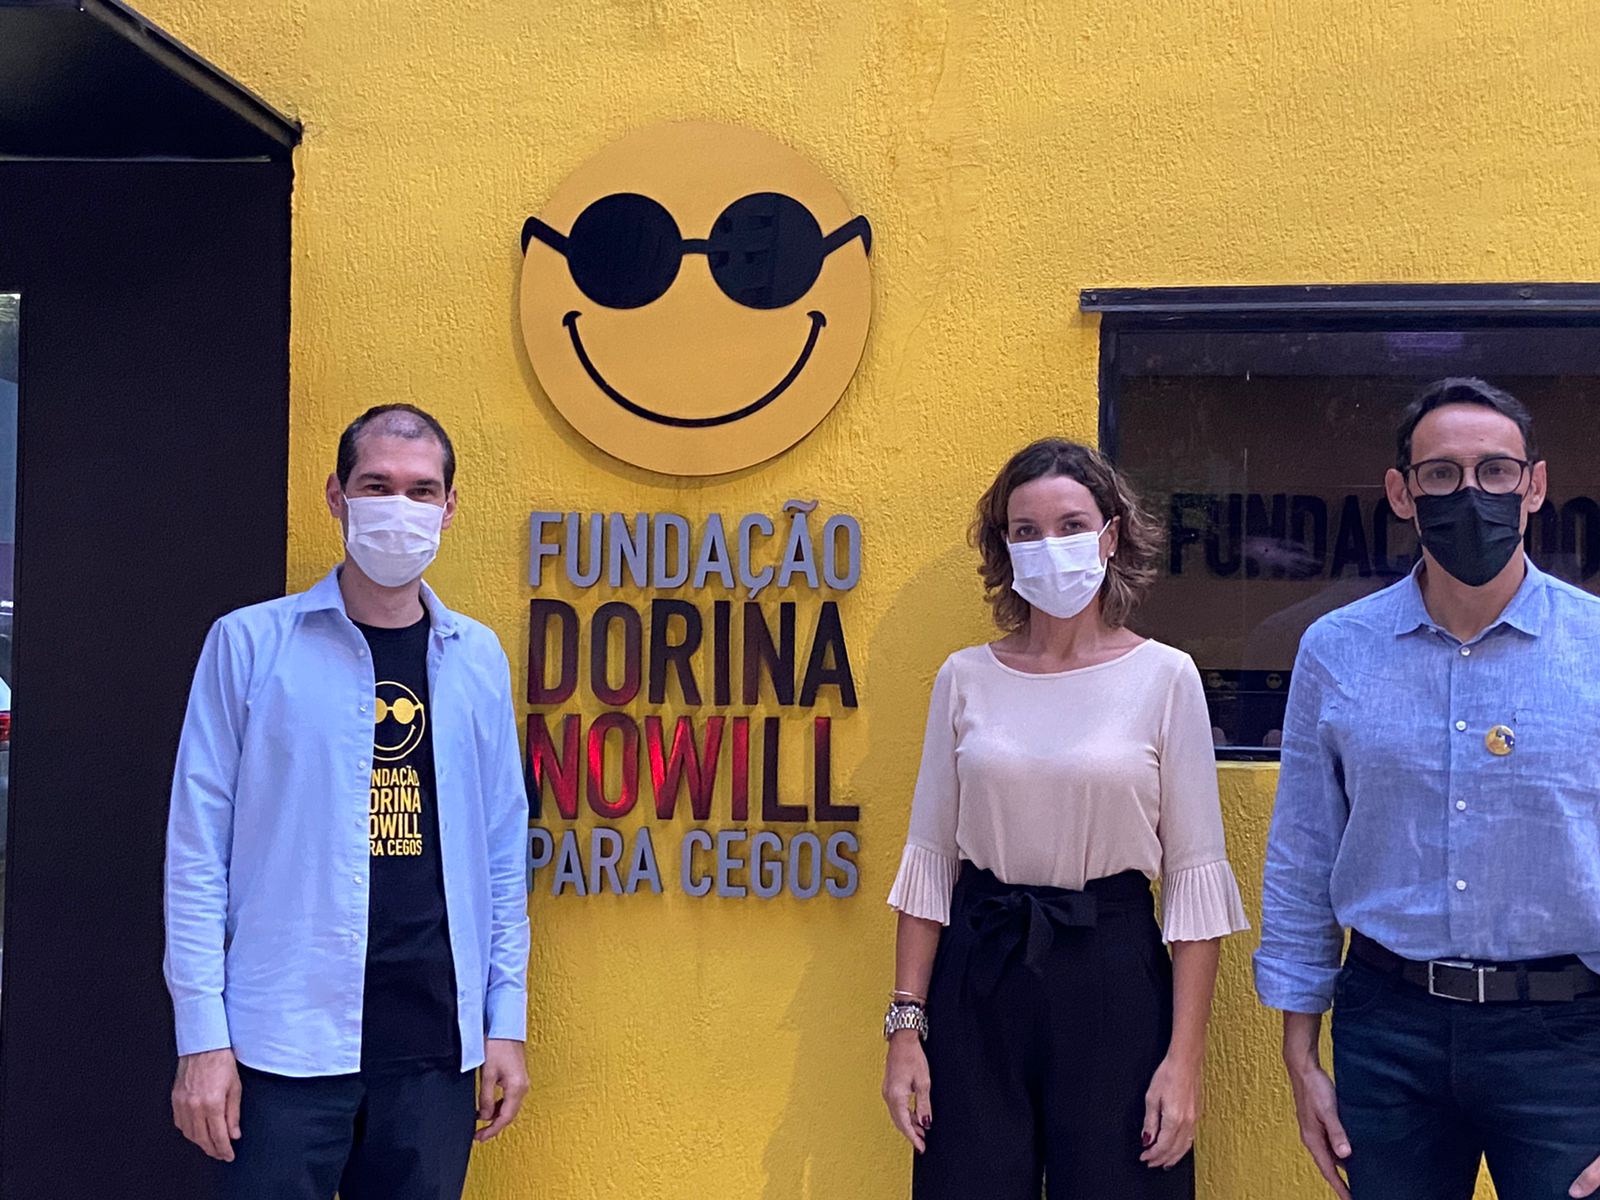 ISD visita a Fundação Dorina Nowill para Cegos em SP - Foto Reginaldo Freitas Jr